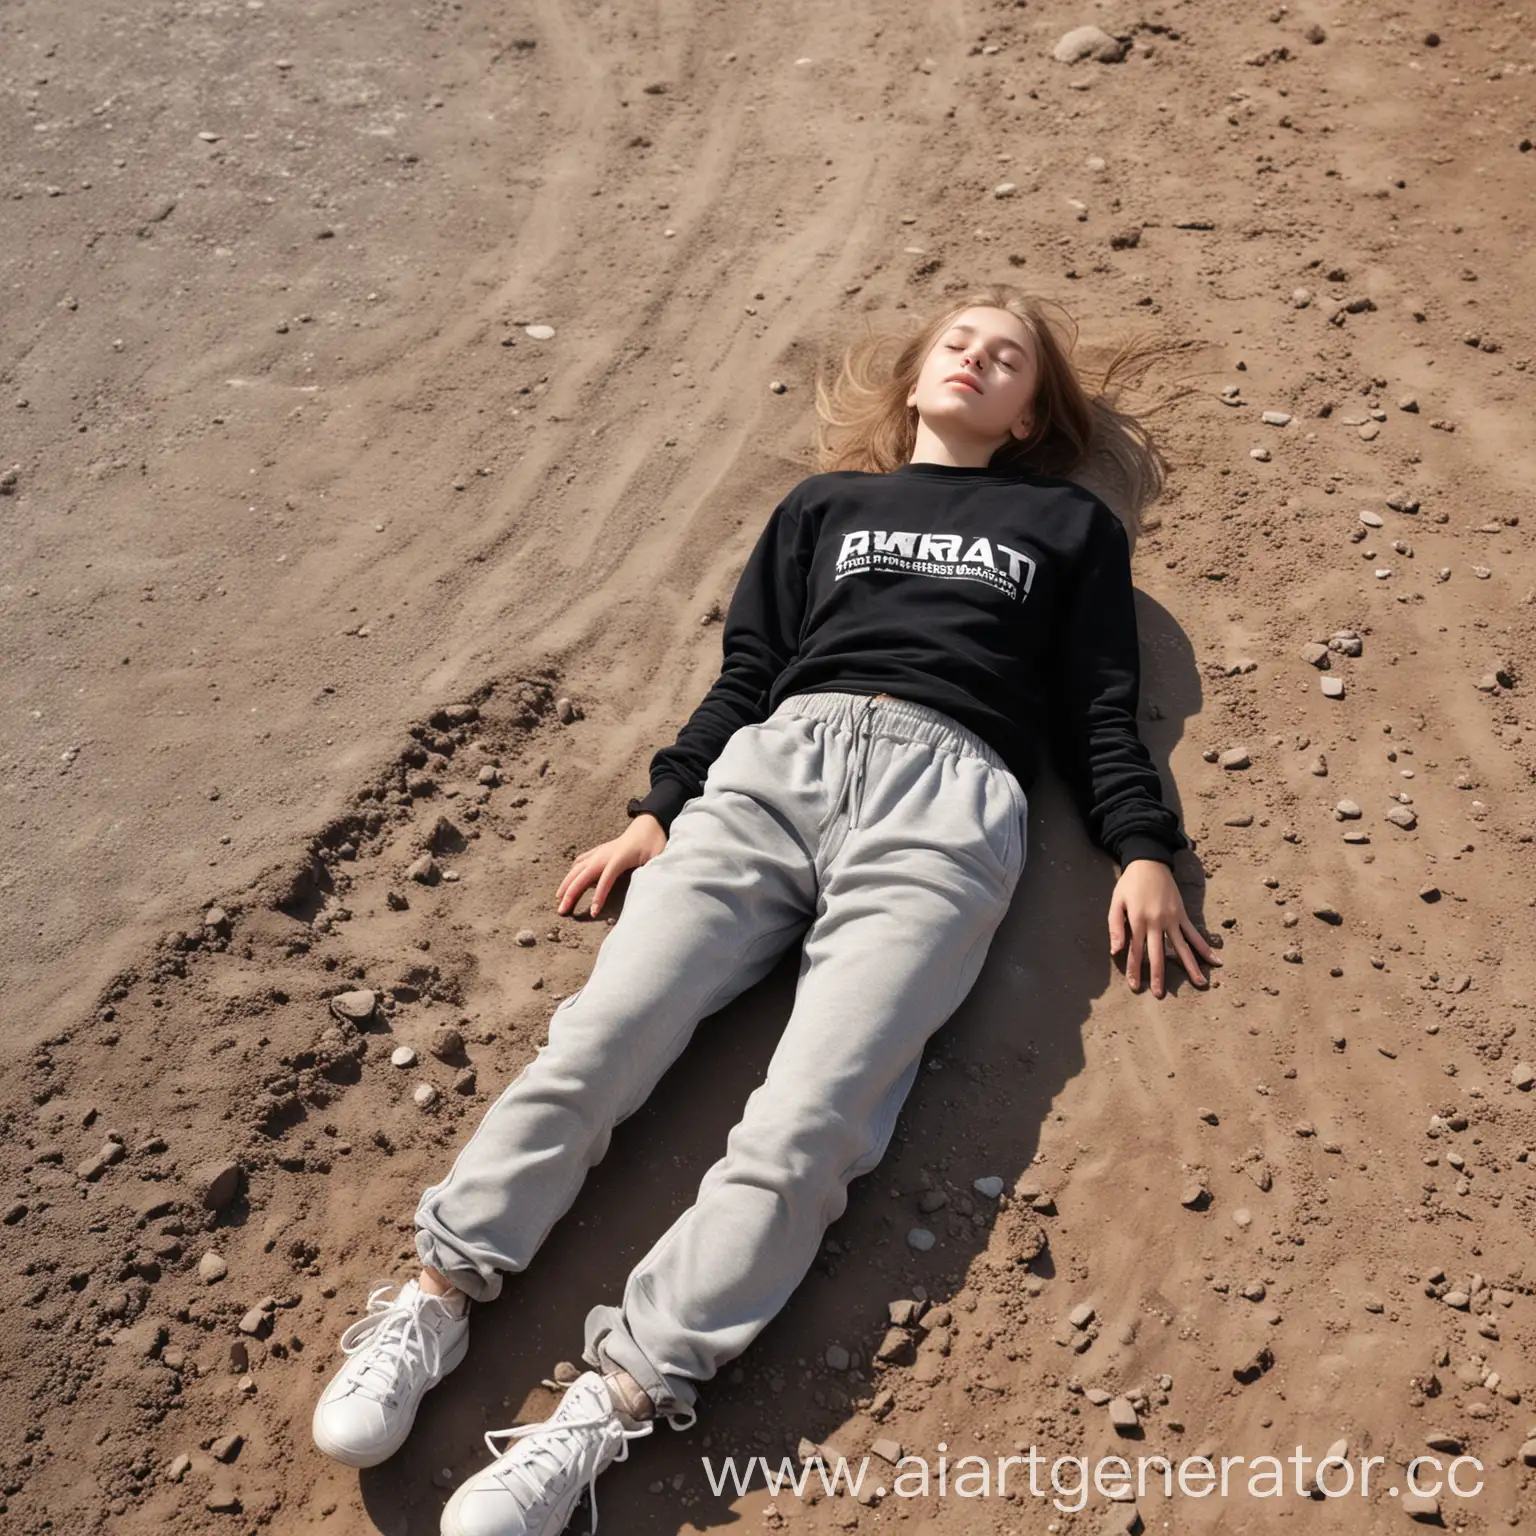 Girl-in-Black-Sweatshirt-Lying-on-Dusty-Road